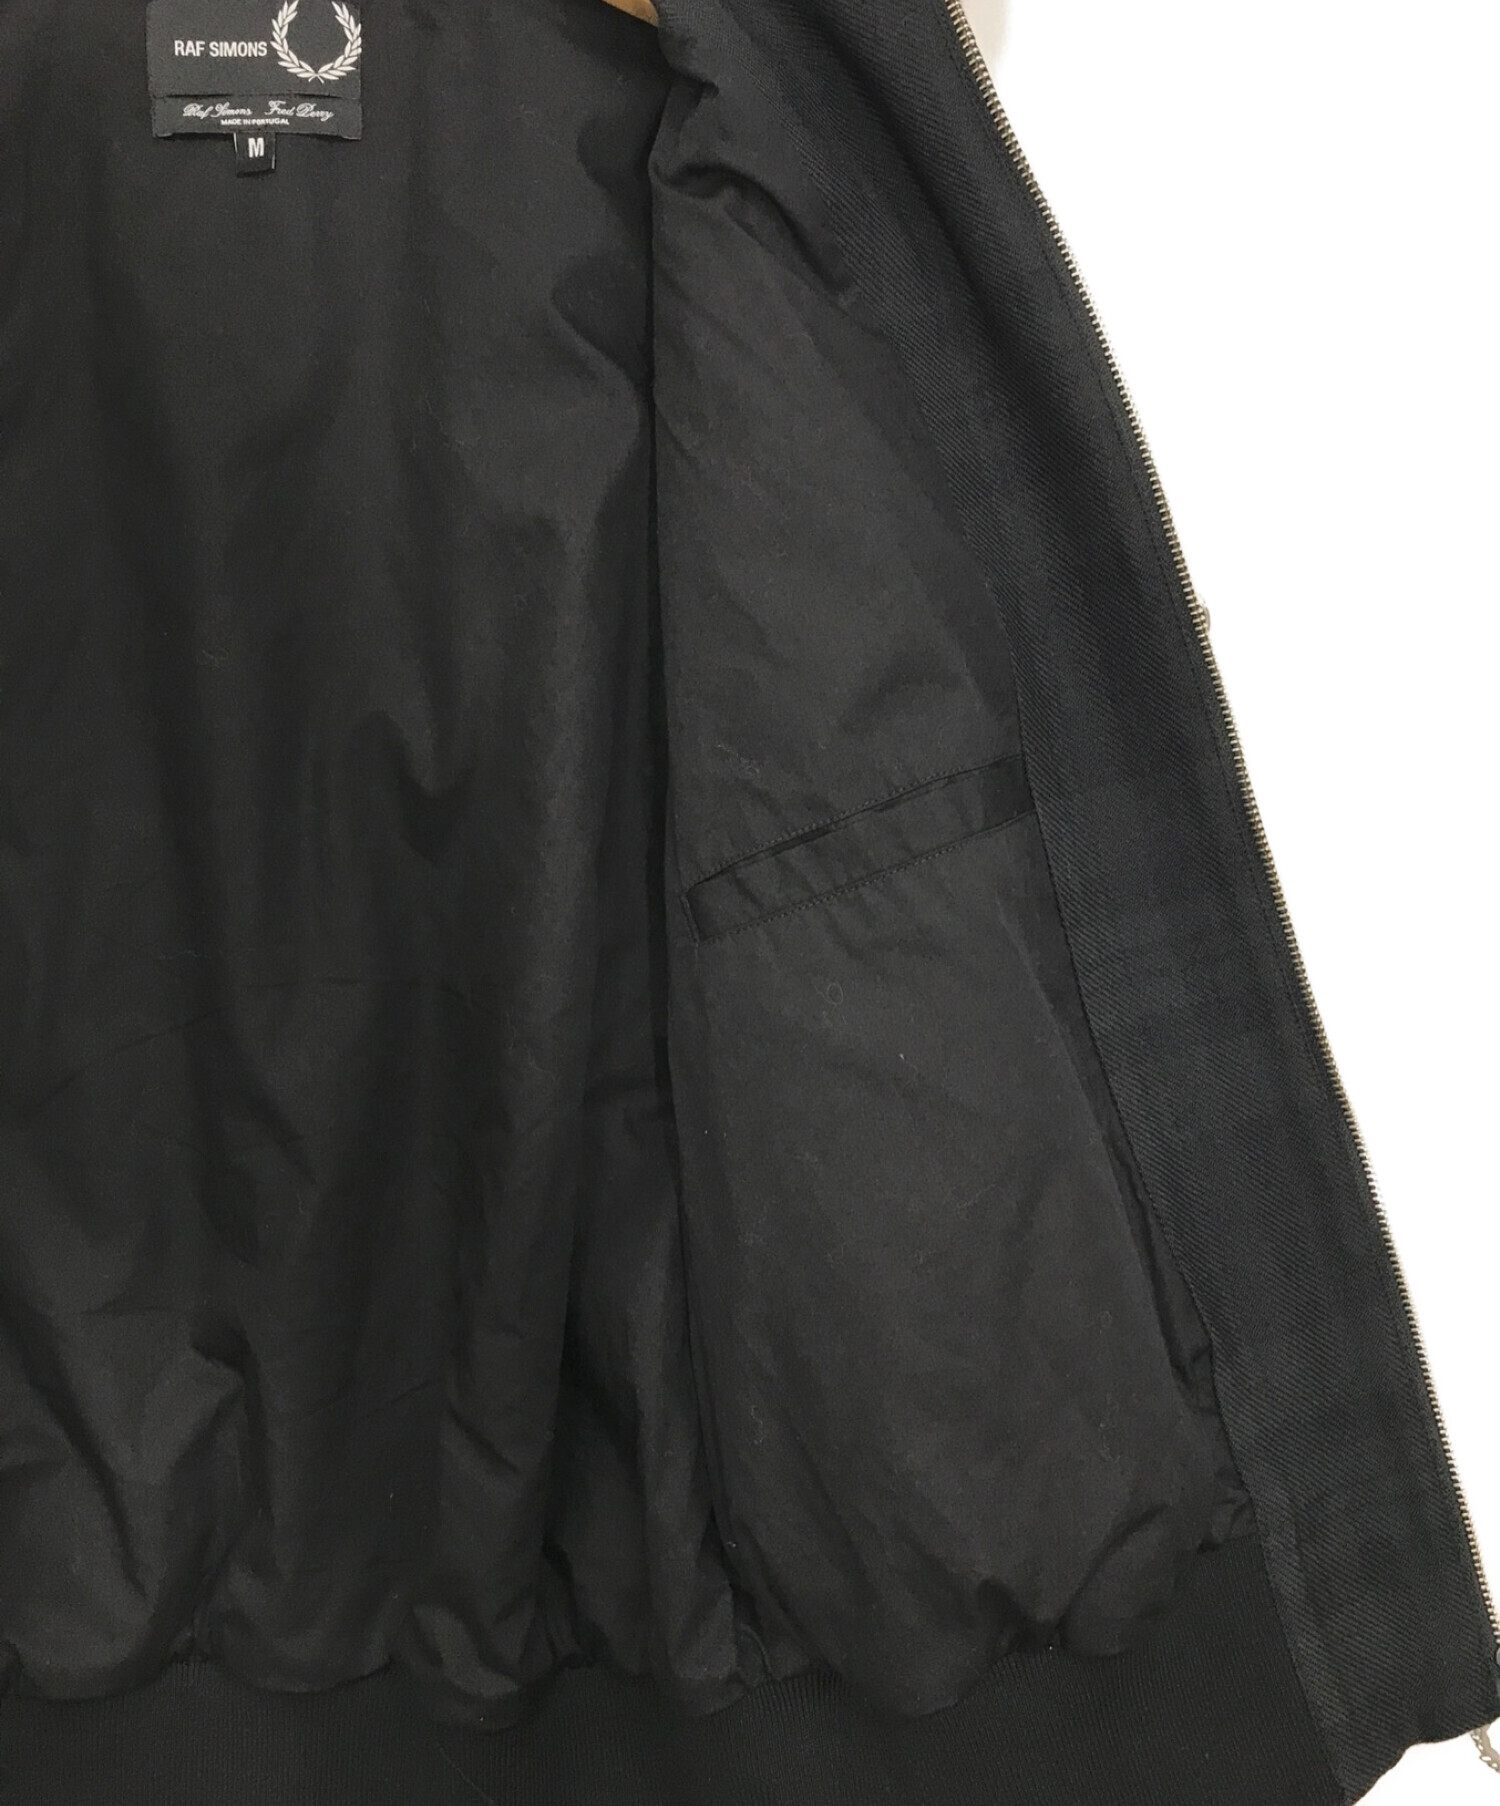 RAF SIMONS × FRED PERRY (ラフシモンズ × フレッドペリー) ハリントンジャケット ブラック サイズ:M